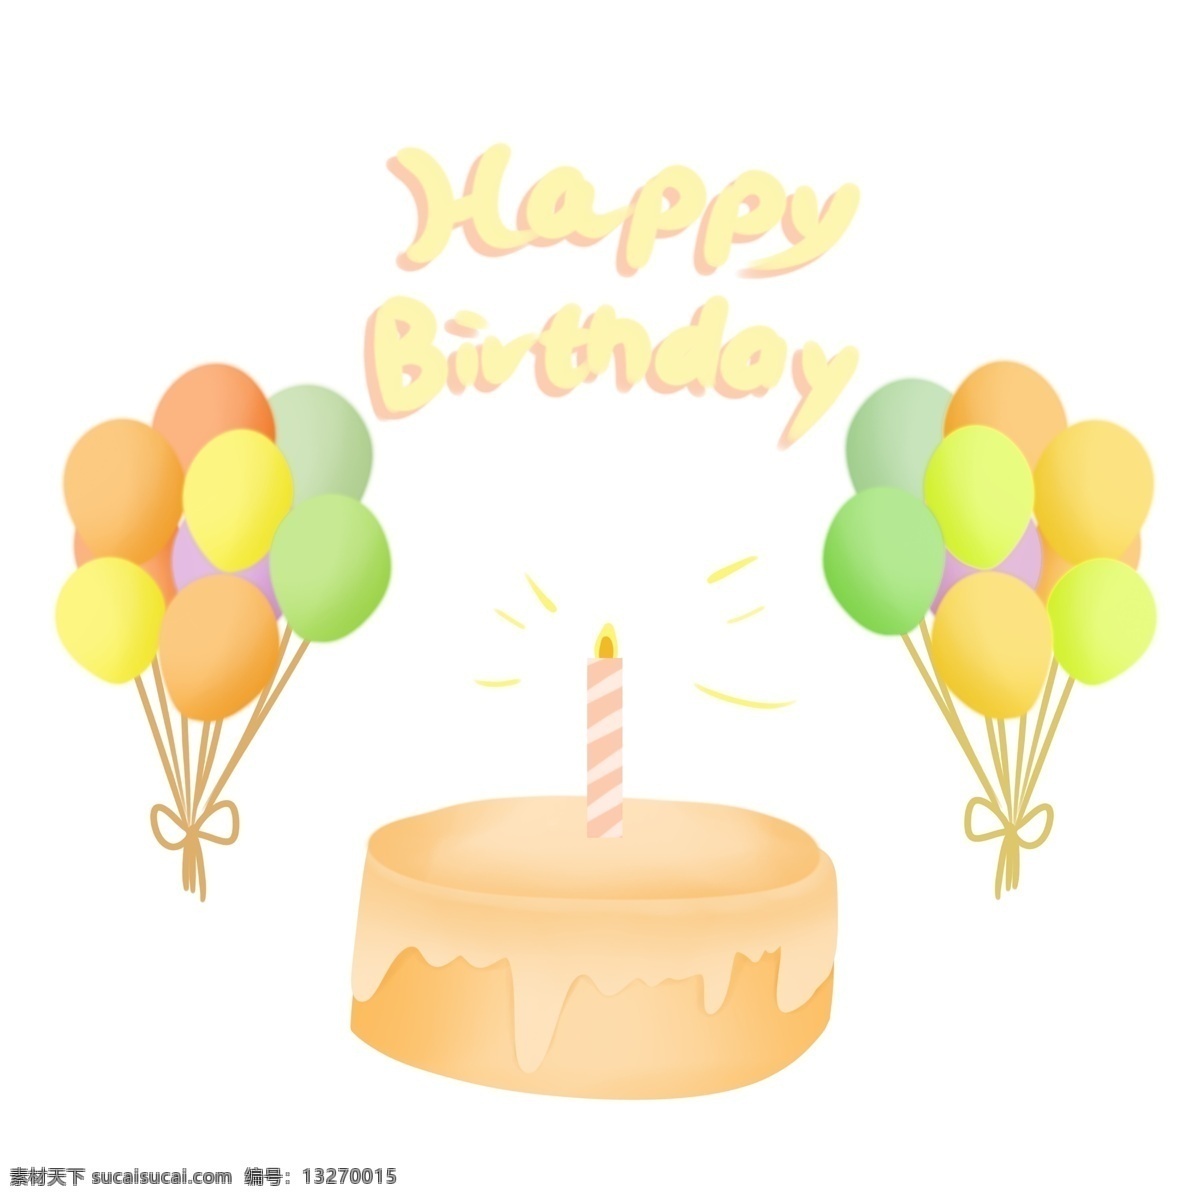 生日 快乐 气球 蛋糕 装饰 生日快乐 蜡烛 祝福 气球裙 字母 柔色 马卡龙 淡色